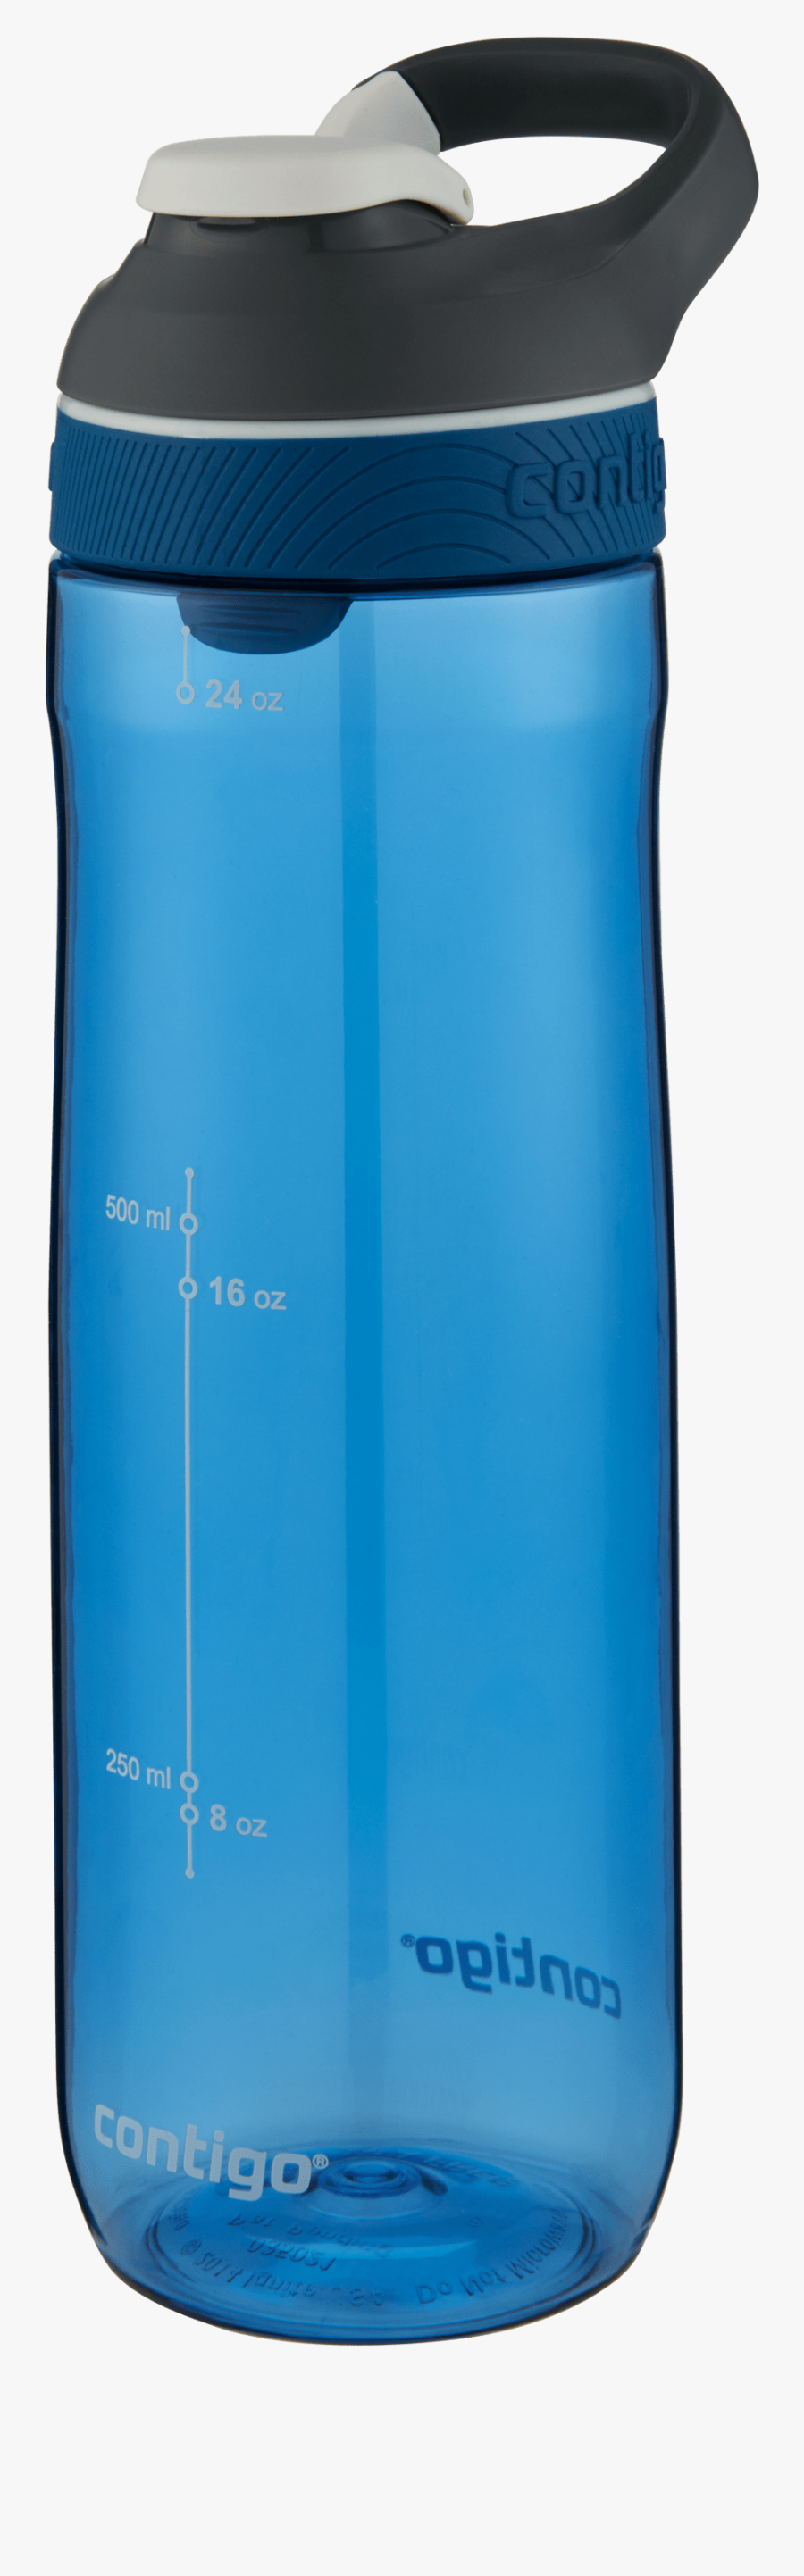 Contigo Autoseal Water Bottle Clipart , Png Download - Mobile Phone Case, Transparent Clipart